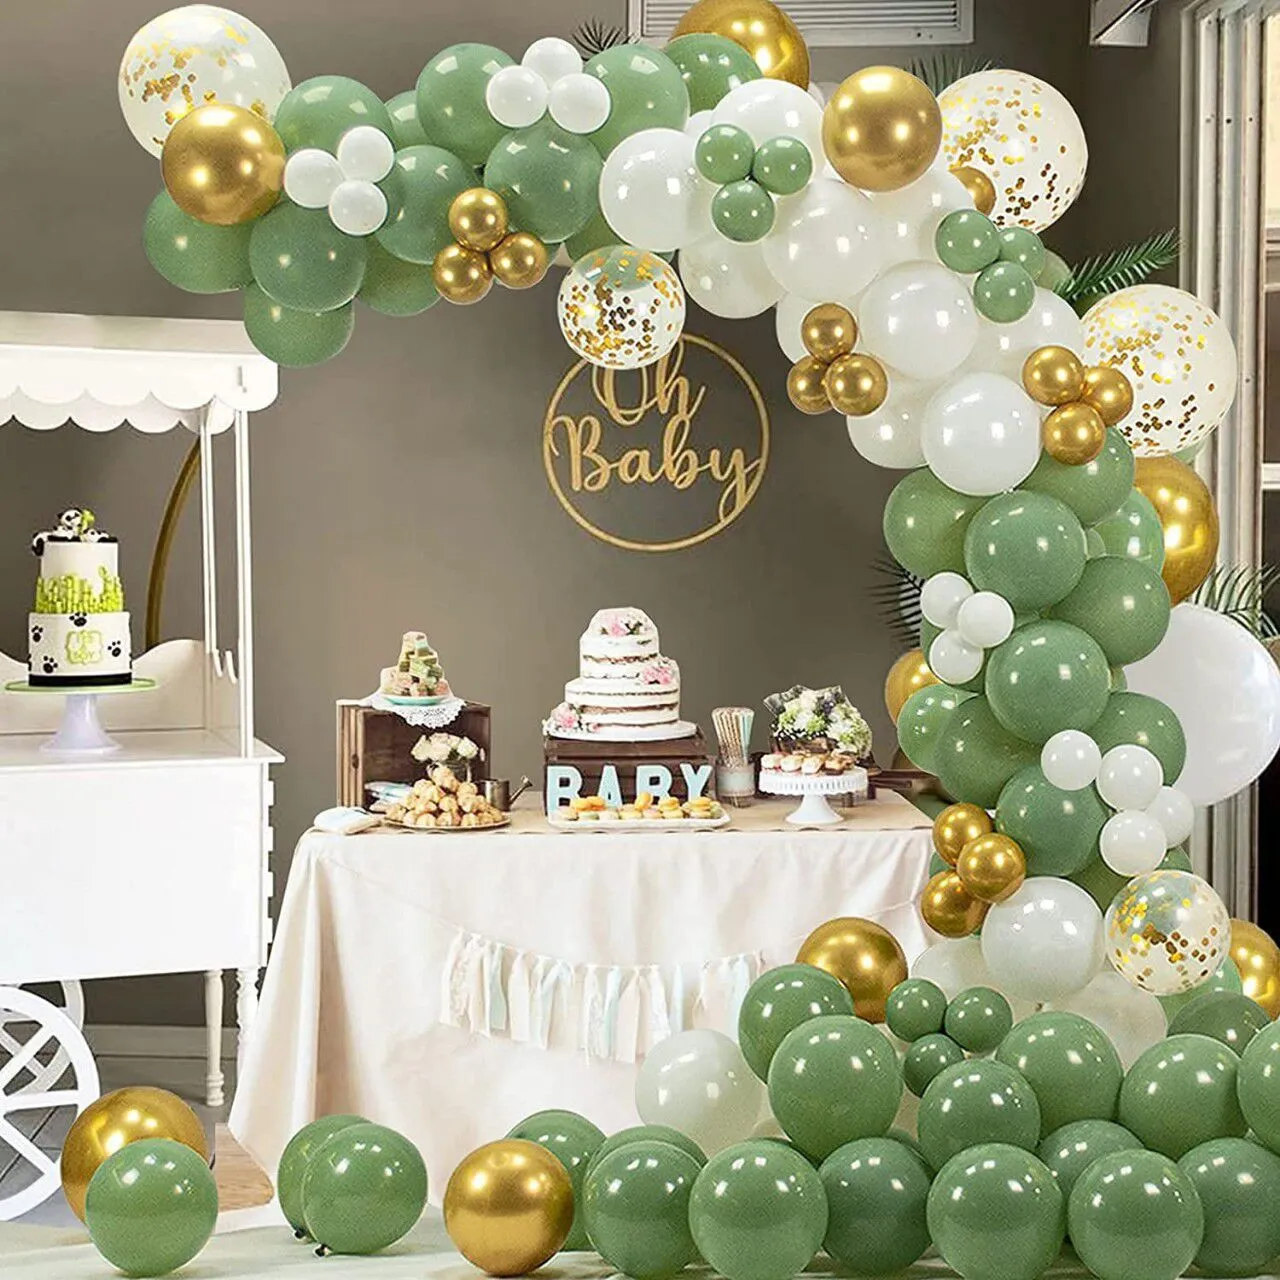 130 قطعة من مجموعة قوس إكليل بالونات اللاتكس الخضراء من الأفوكادو تتضمن بالونات ذهبية معدنية بيضاء بالونات ورقية ذهبية اللون- أ big image 1